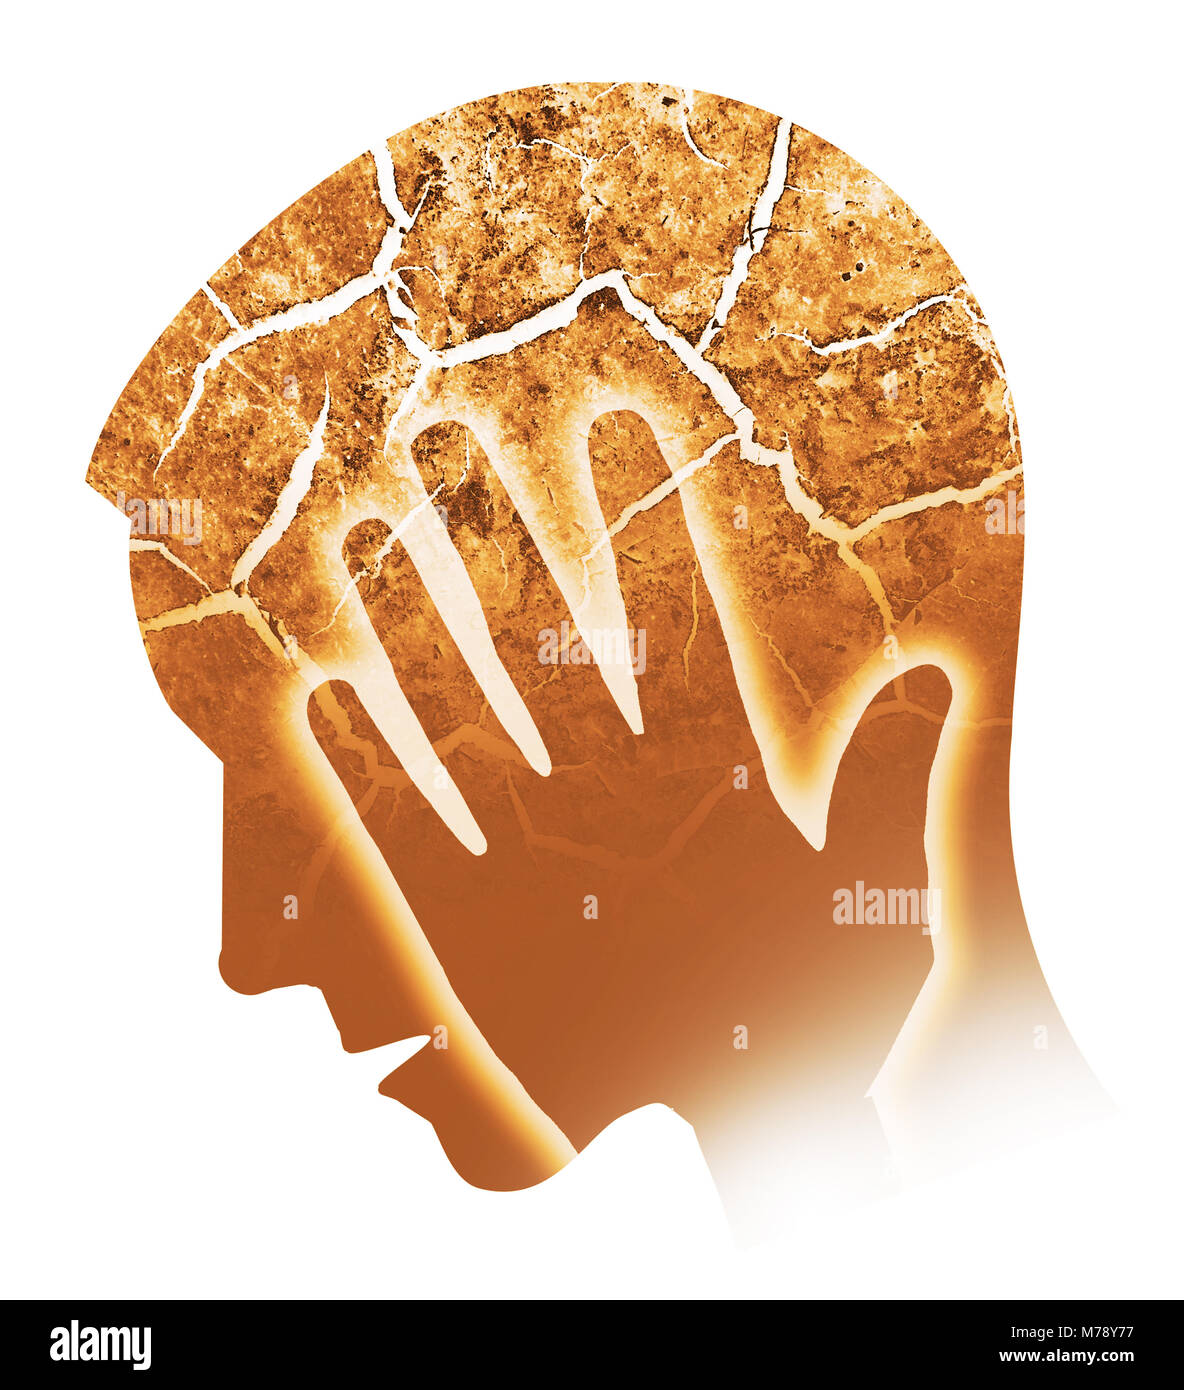 Kopfschmerzen, Migräne, Depression. Männliche Silhouette mit gerissenen Kopf symbolisiert Wahnsinn, Depression, Kopfschmerzen, Schizophrenie. Mann seinen Kopf halten. Isol Stockfoto